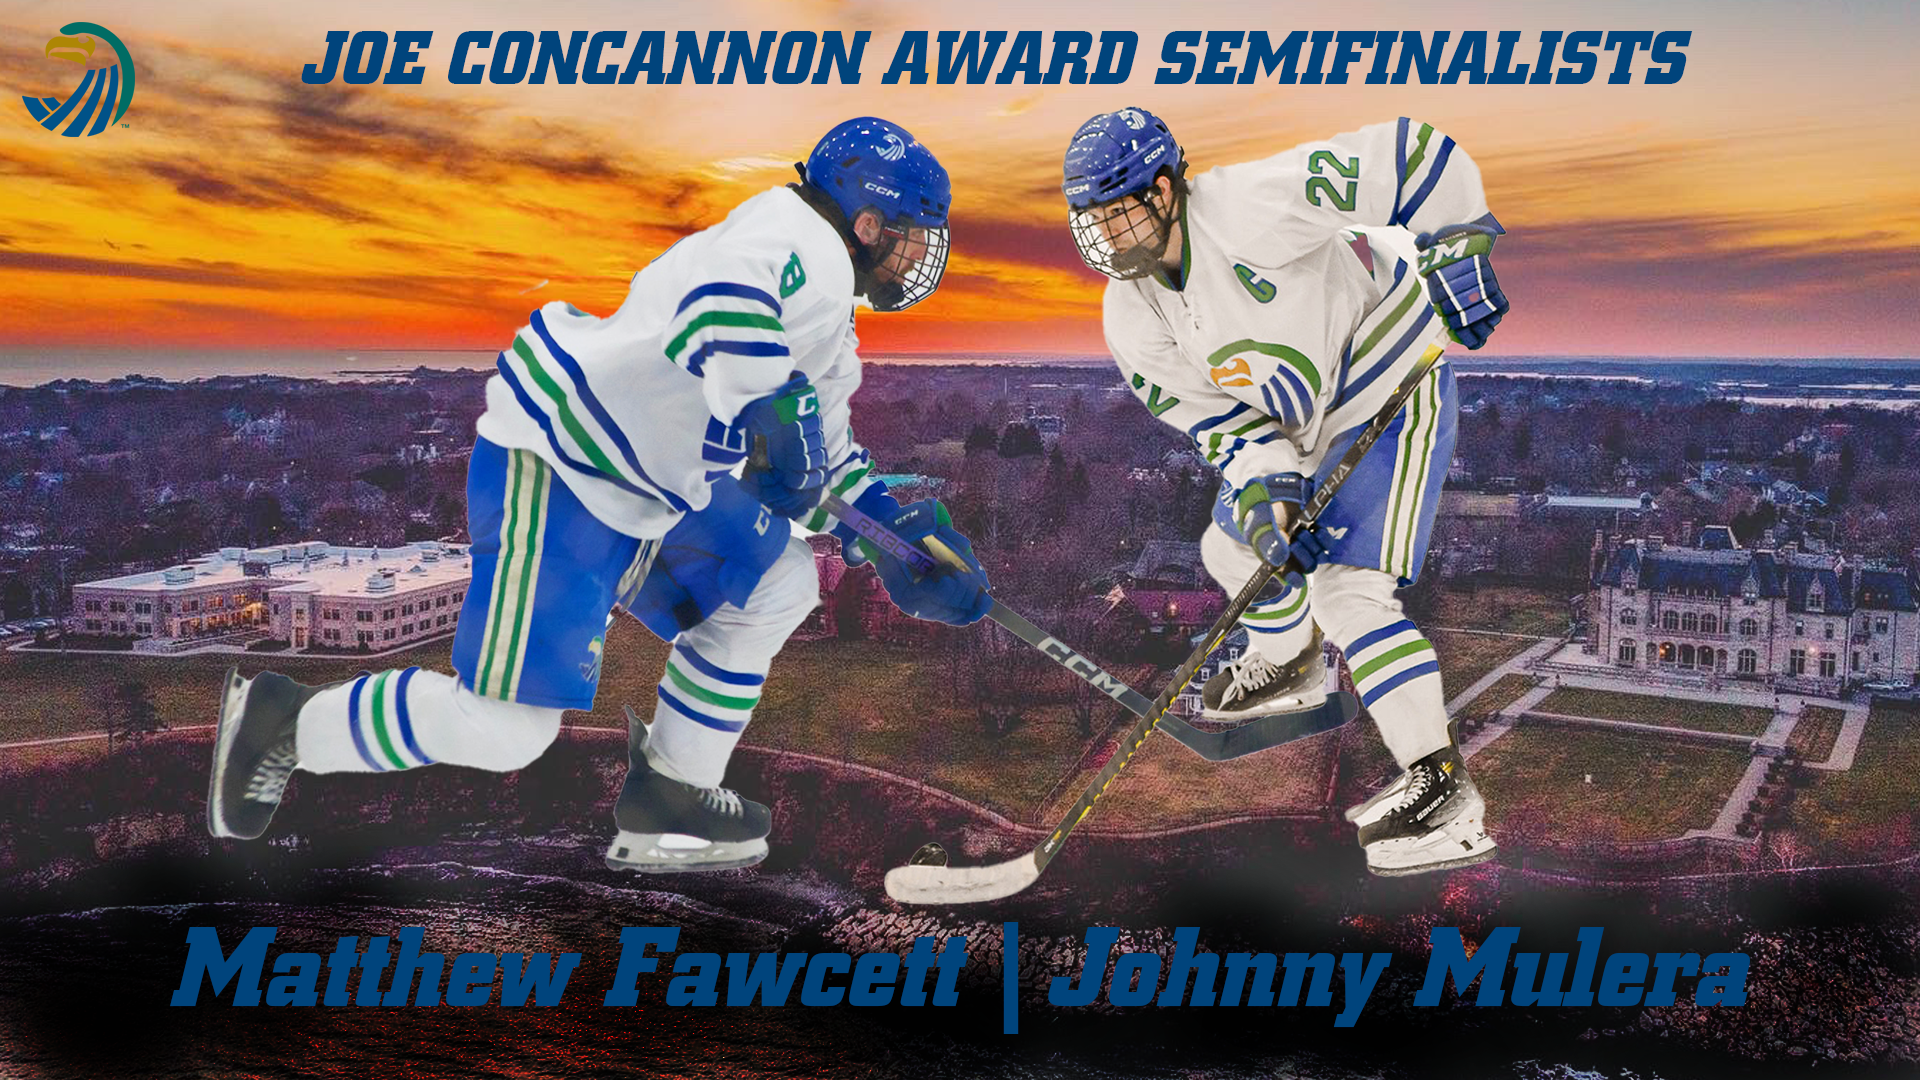 Fawcett and Mulera named Joe Concannon Award Semifinalists